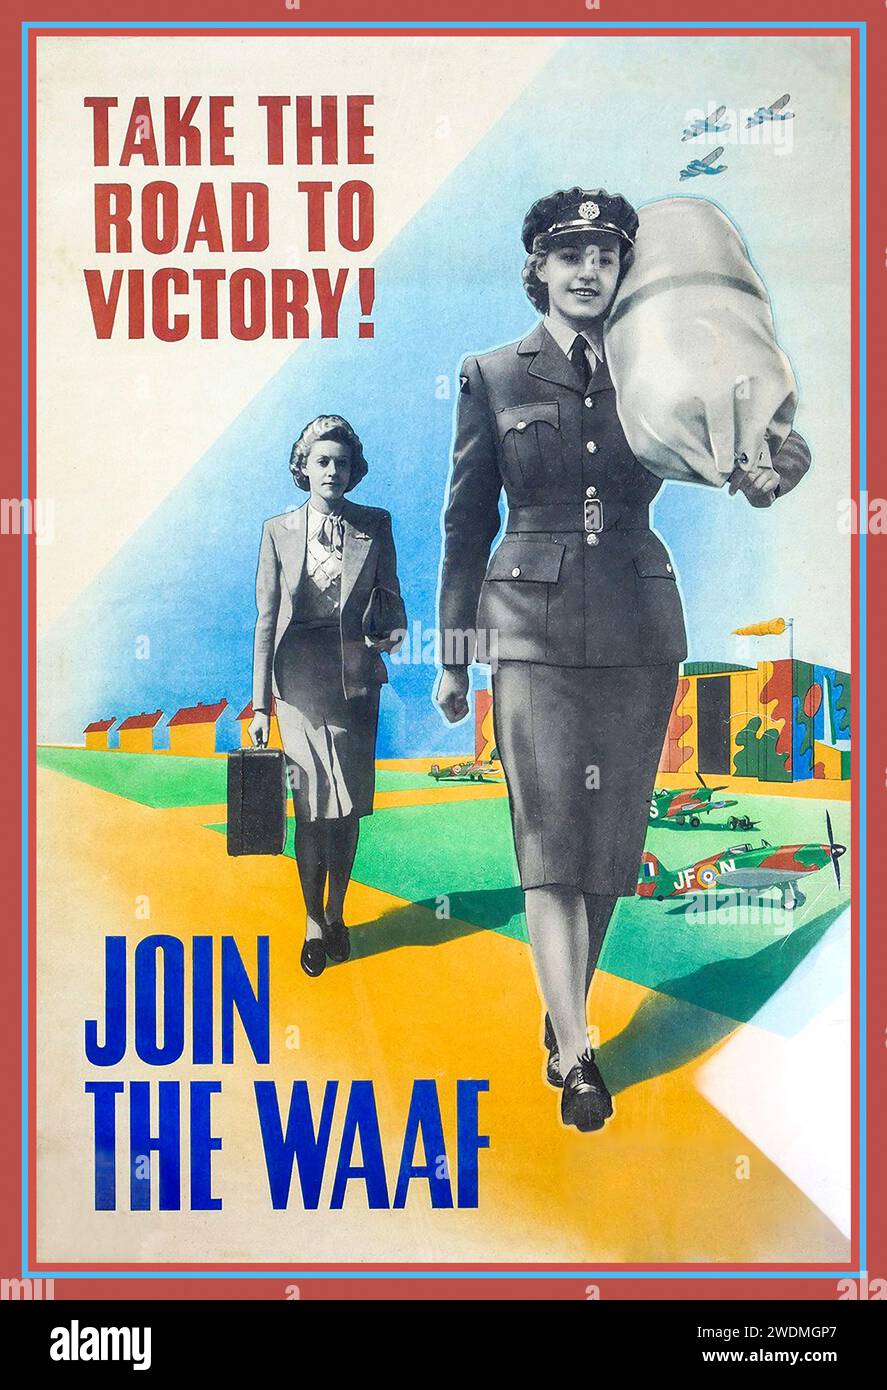 WAAF WW2 UK 1940s affiche de recrutement pour la WAAF 'Take the Road to Victory' 'Join the WAAF' Womens Auxillary Air Force. Avec Spitfire Aircraft illustré derrière sur un aérodrome de la RAF en Grande-Bretagne. Guerre mondiale 2 Seconde Guerre mondiale Banque D'Images